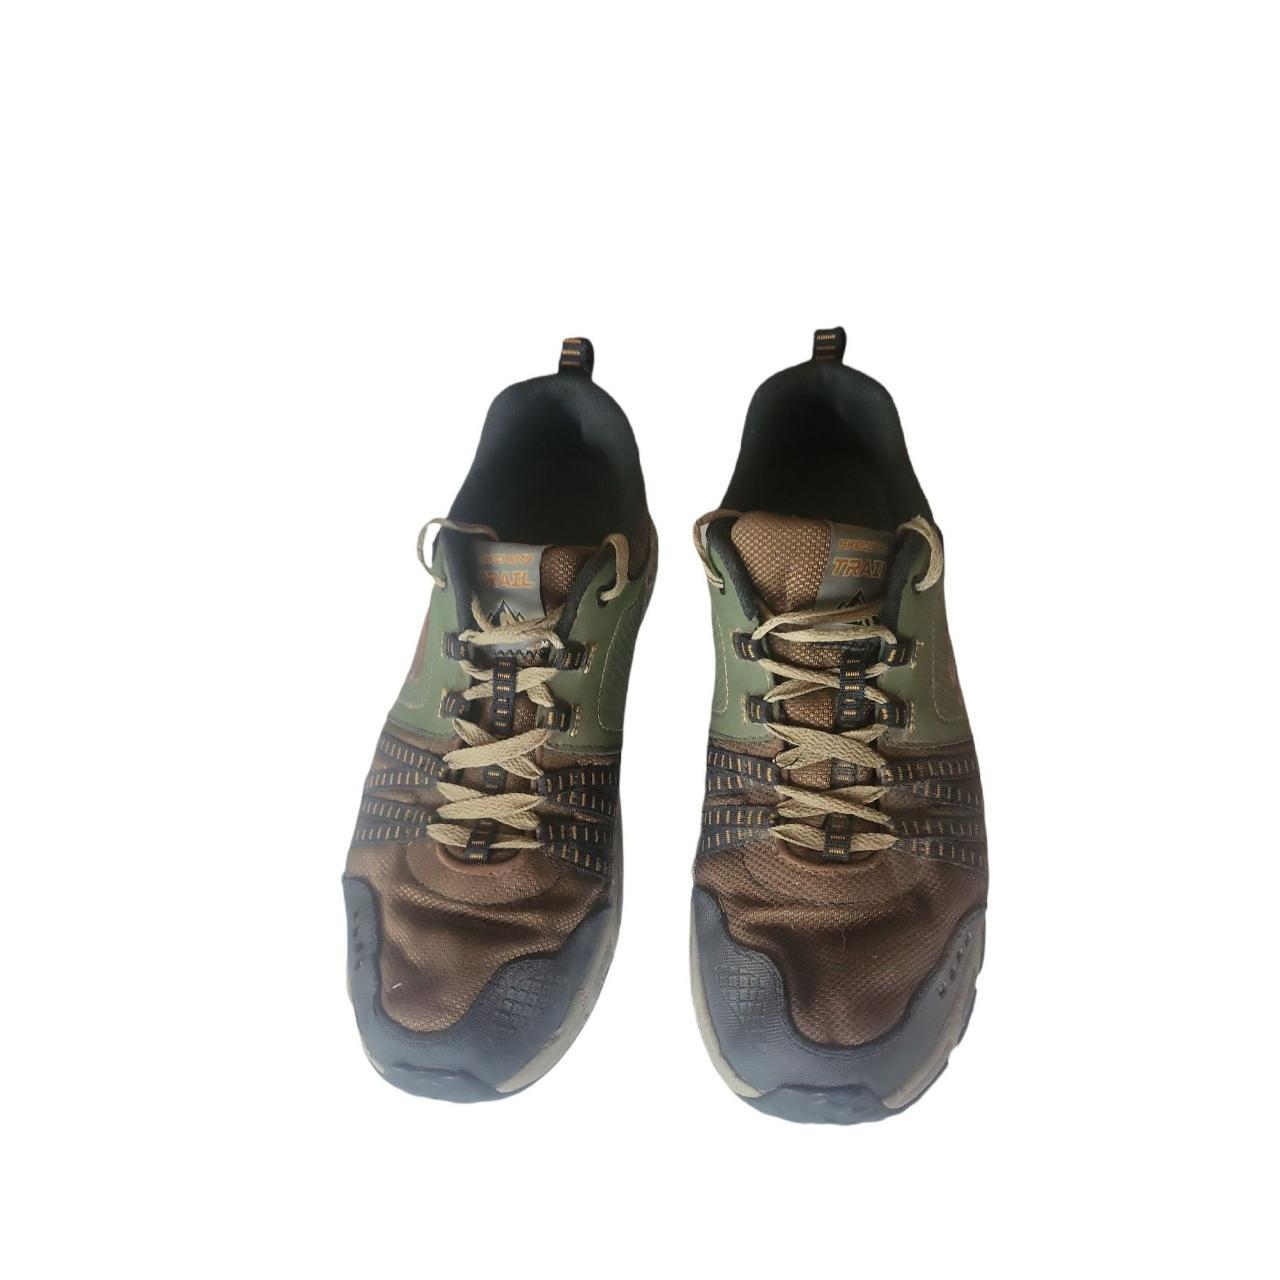 Skechers Outdoor All Terrain Trail Sz 8 Shoes... - Depop